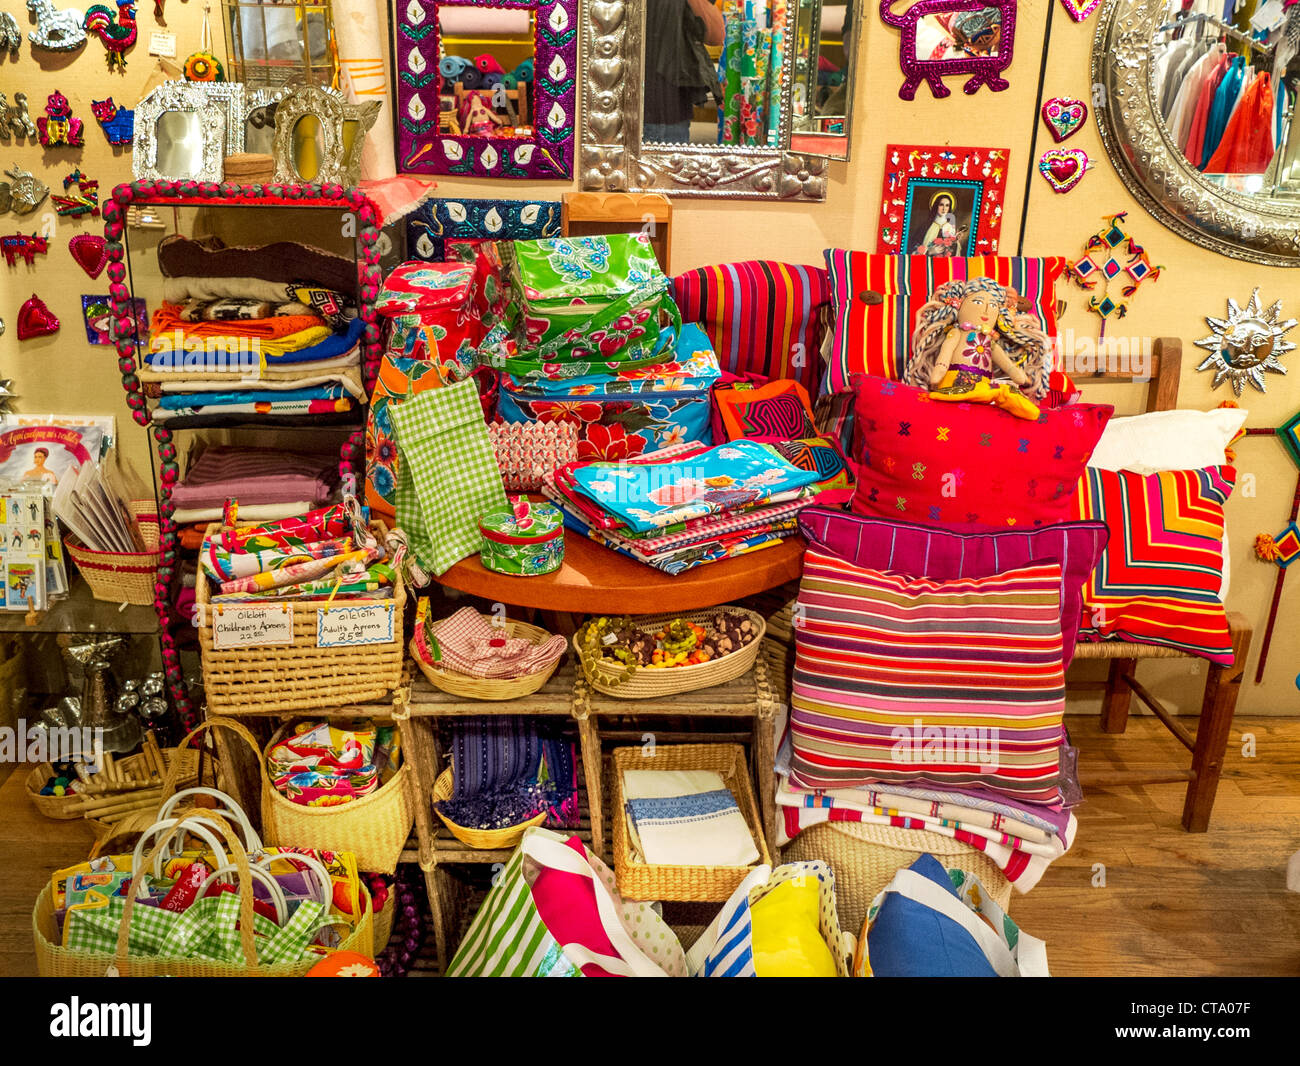 L'art populaire mexicain coloré est exposée à une spécialité gift store à Midtown Manhattan, New York. Banque D'Images